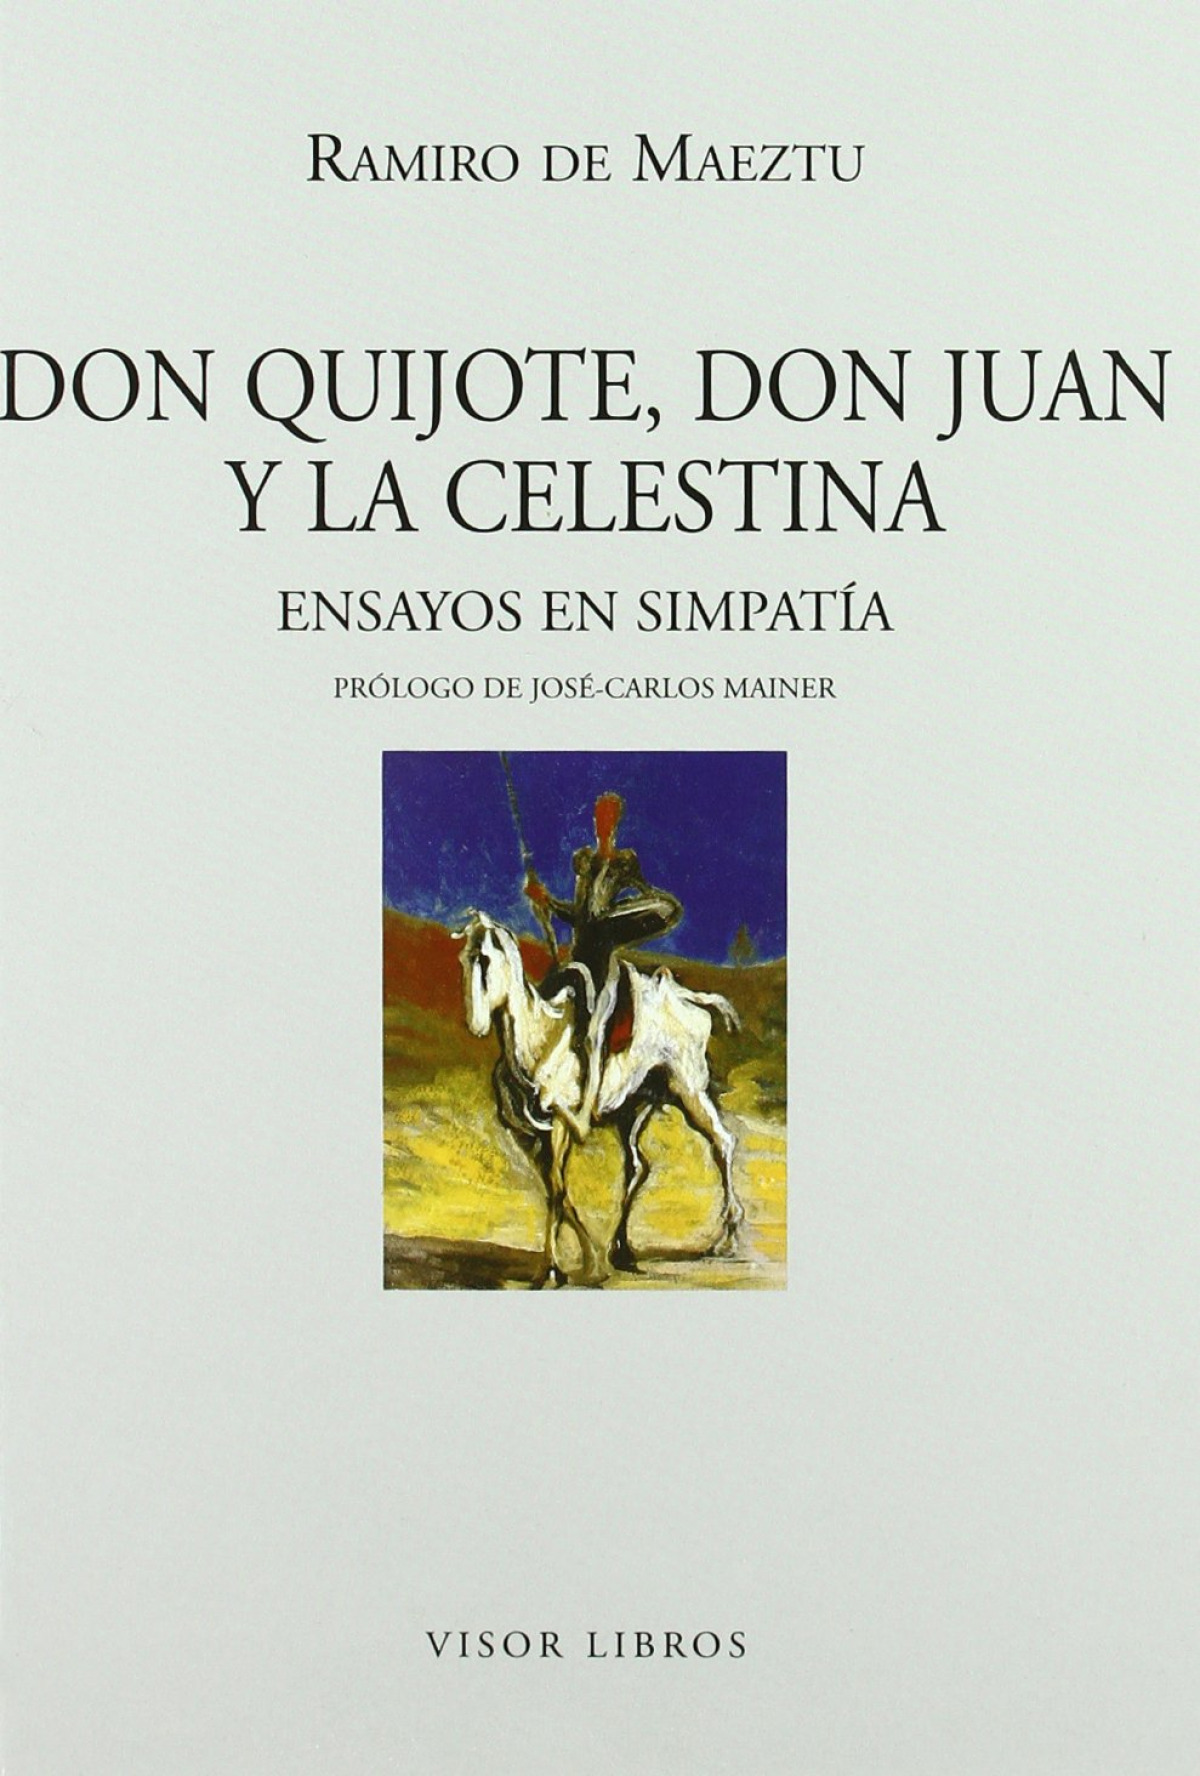 Don quijote don juan y la celestina ensayos en simpatia - De Maetzu, Ramiro